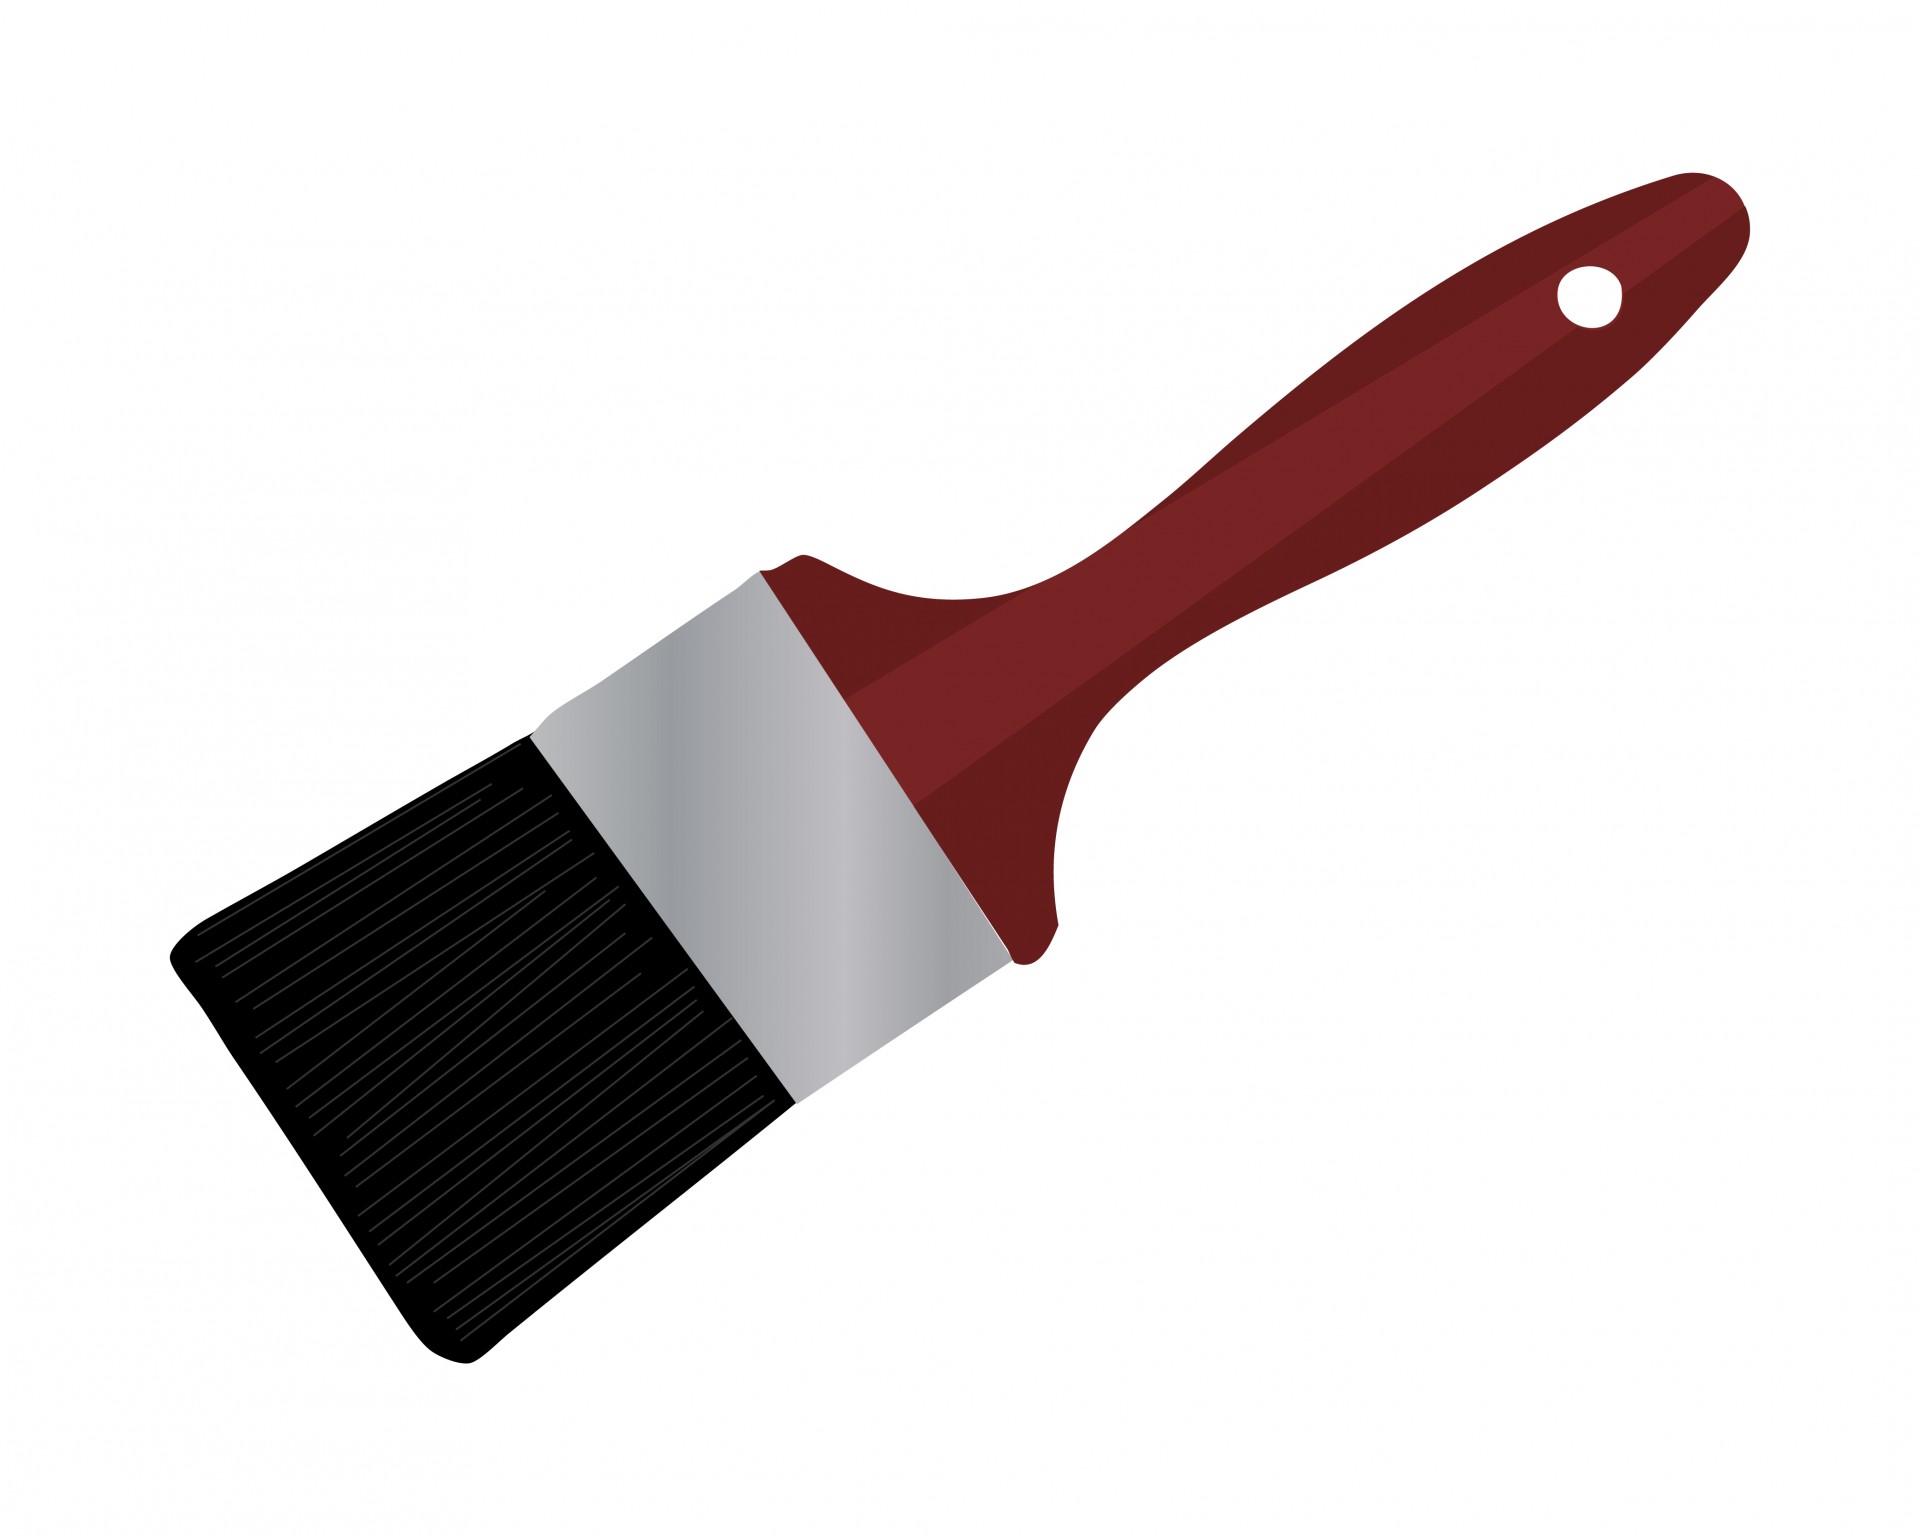 Paintbrush paint brush clipar - Paint Brushes Clip Art